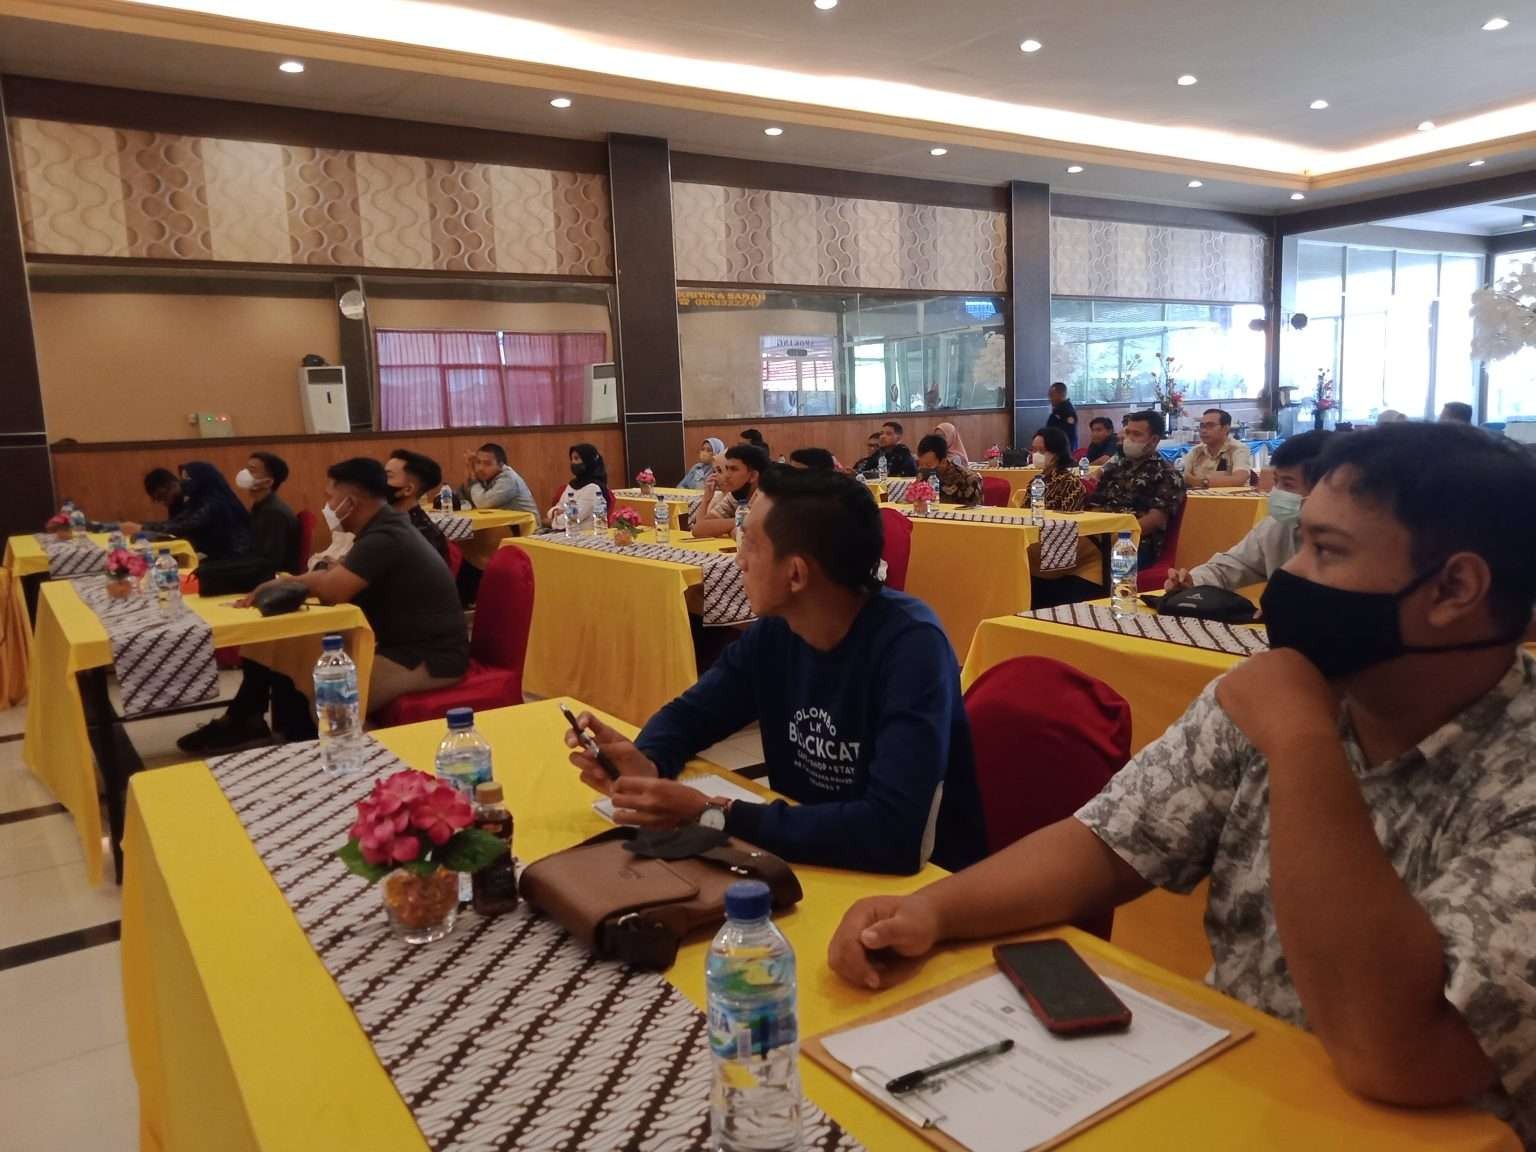 Dinas Pariwisata, Pemuda dan Olahraga (Disparpora) Kota Pasuruan menyelenggarakan Pelatihan Kewirausahaan dan Manajemen Usaha bagi para pemuda. (Foto: Istimewa)